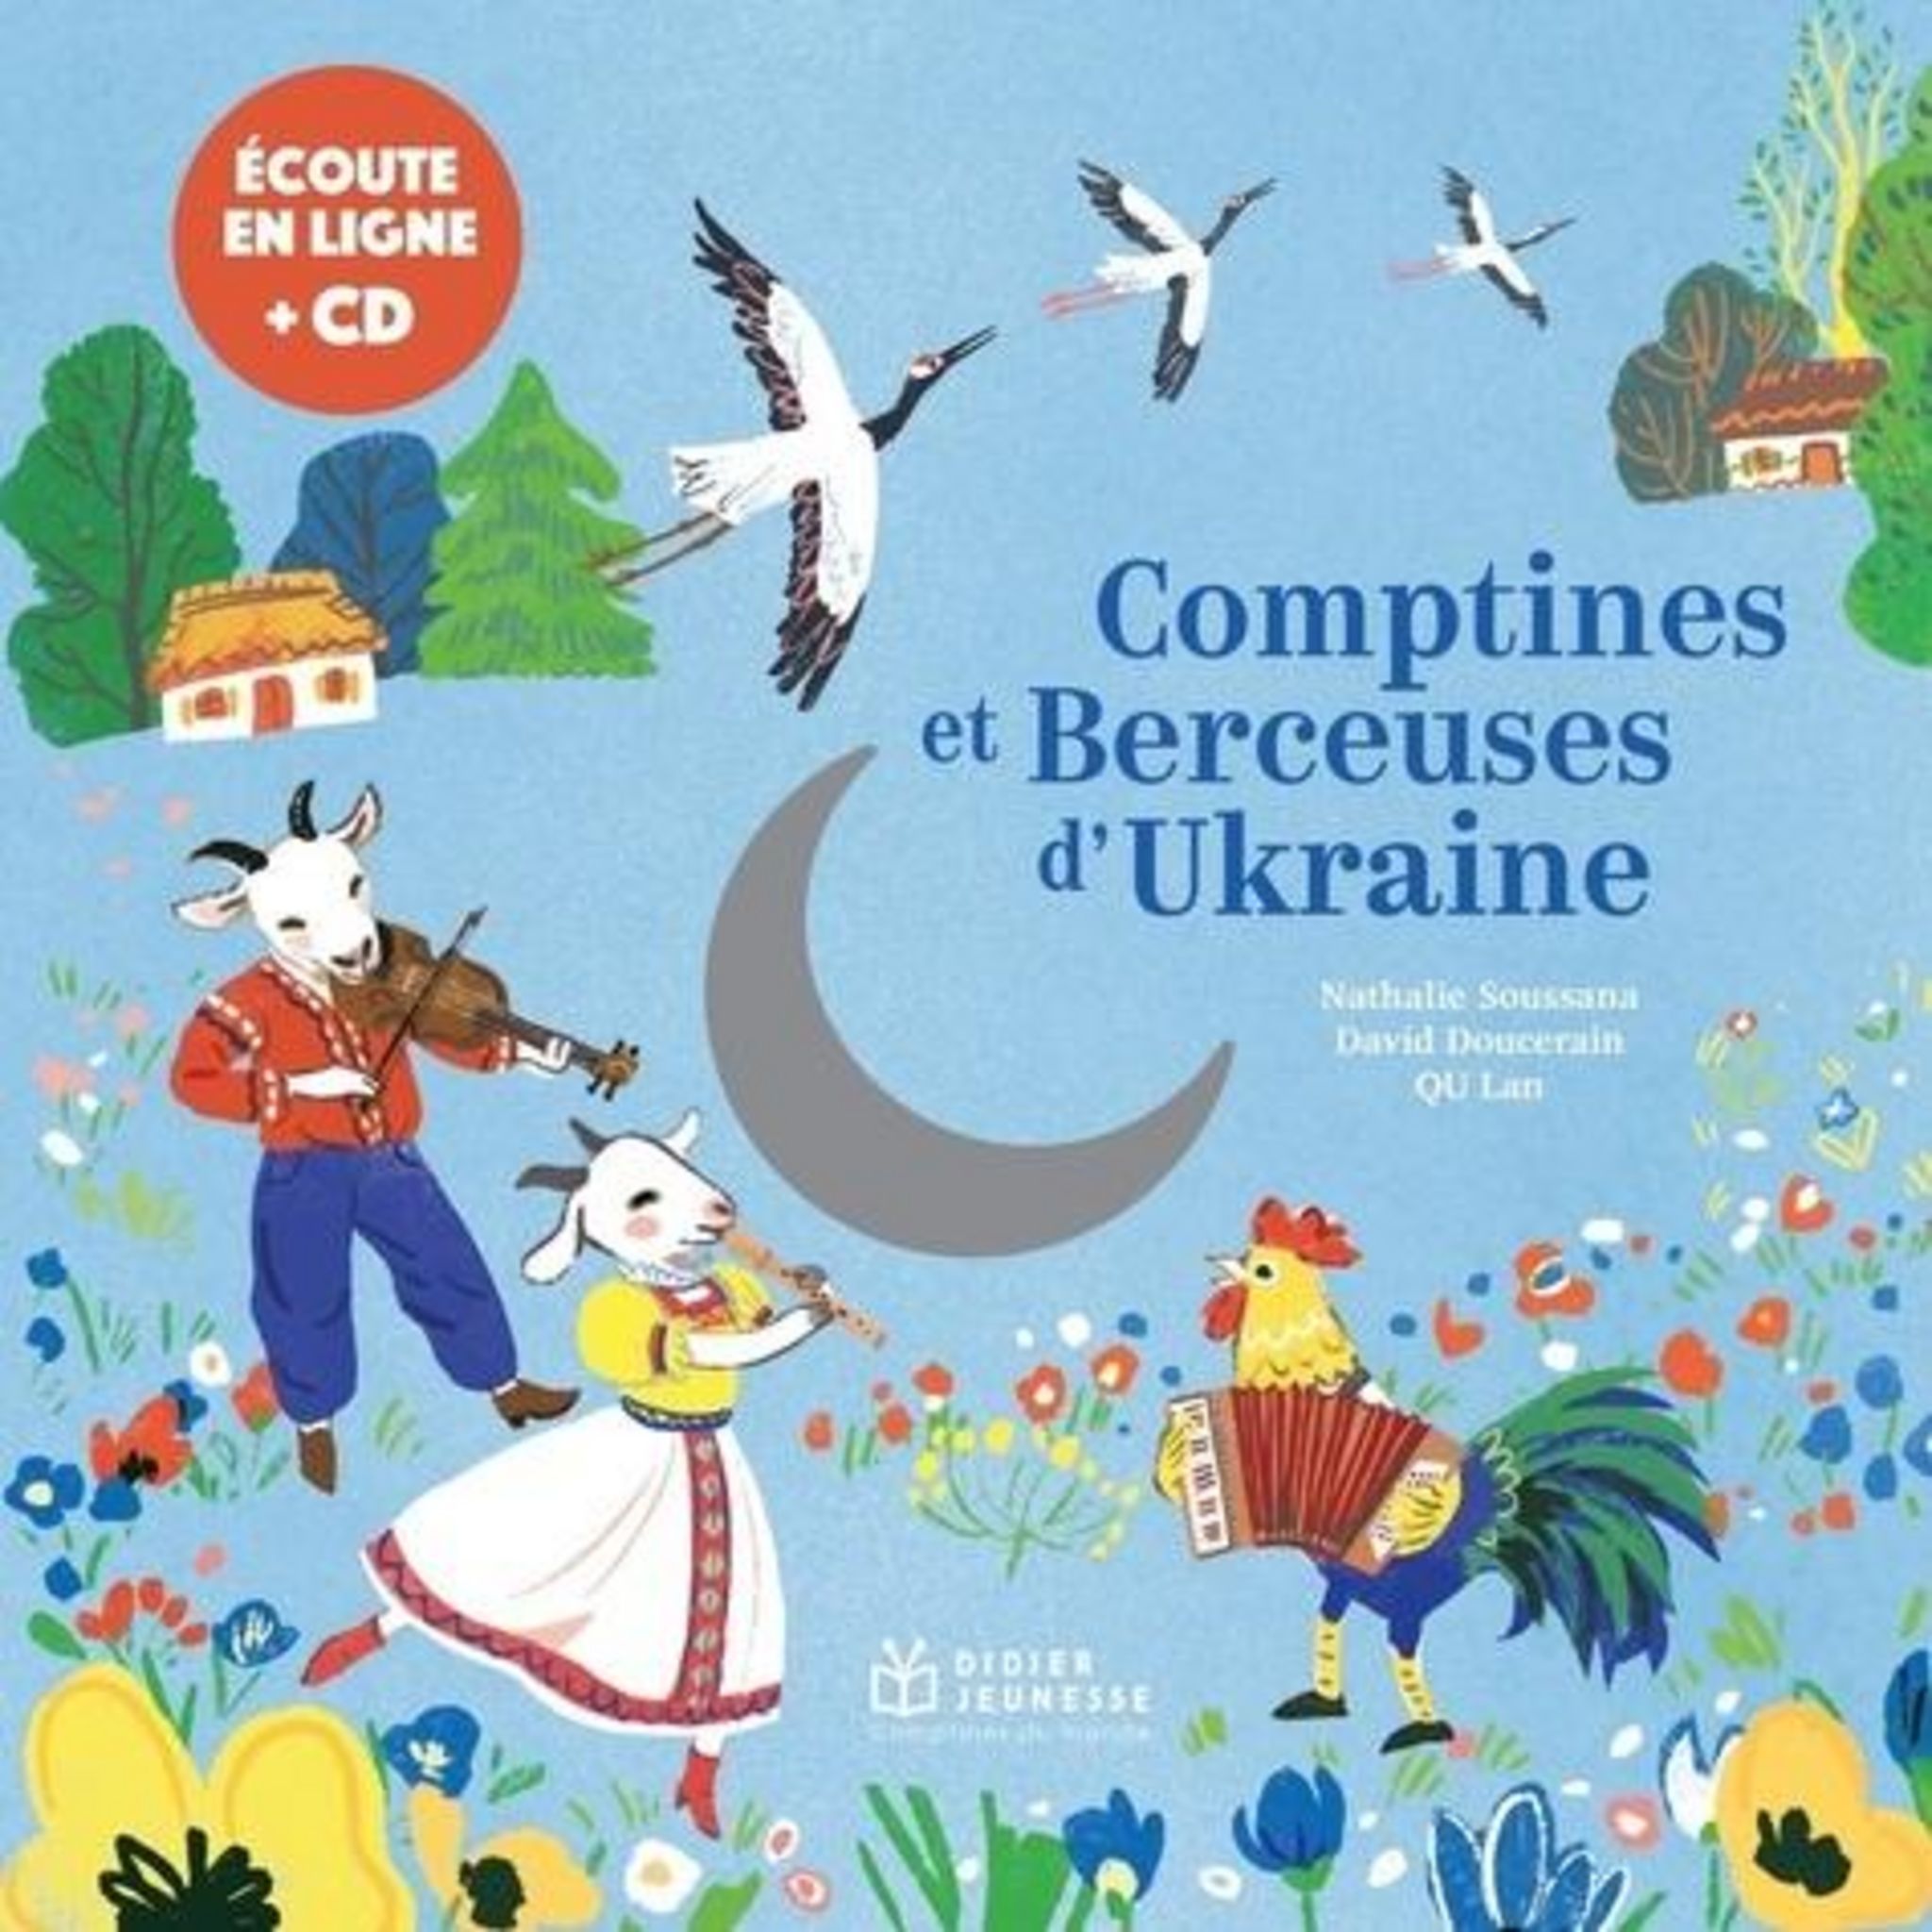 Chansons et comptines - Livres CD - livres de la série aux Editions  Flammarion Jeunesse